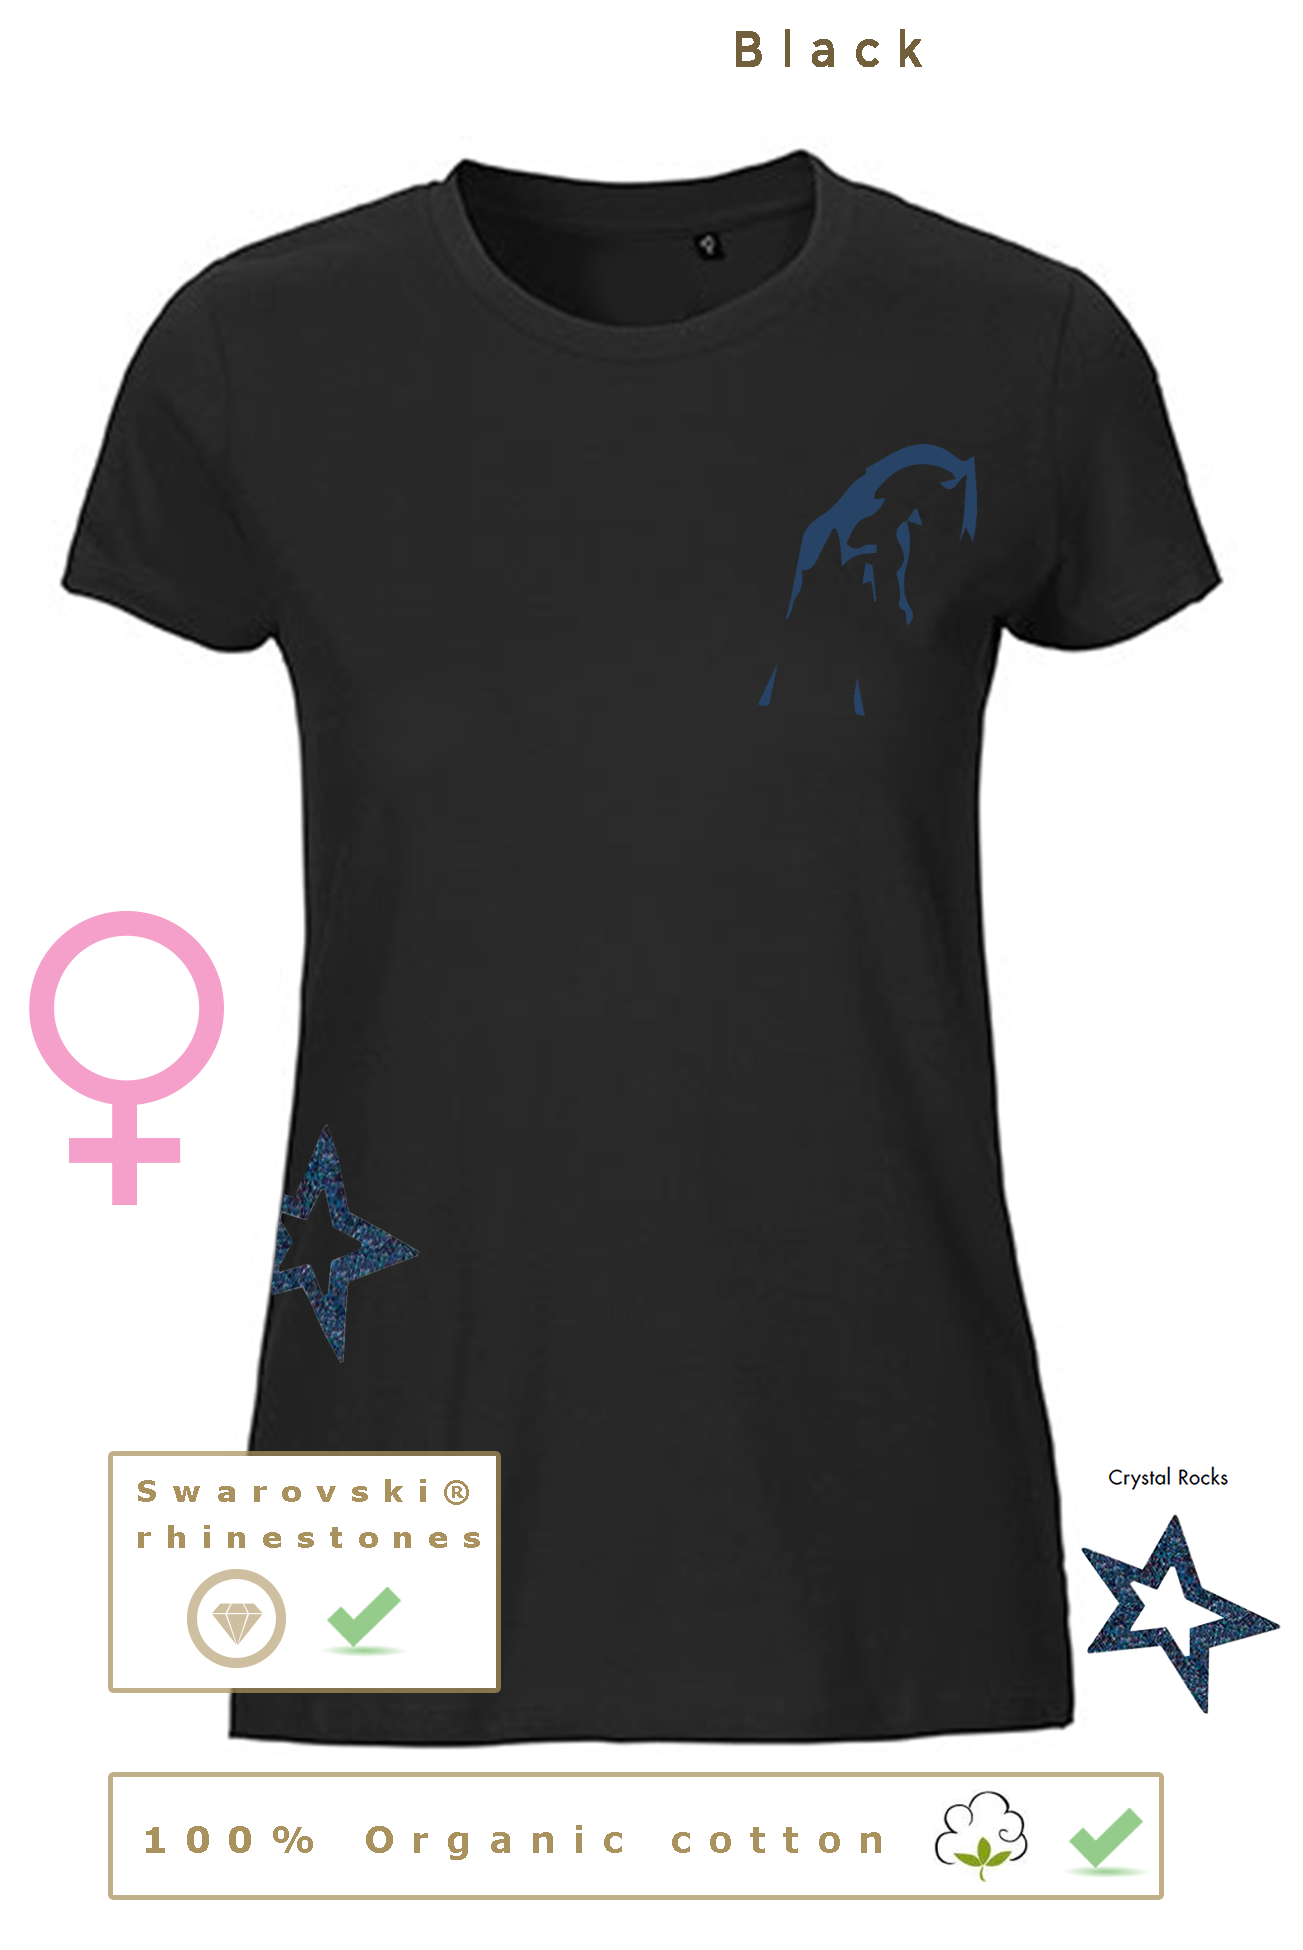 T-shirt BIO, 40€ pour homme/femme & 35€ pour enfant (disponible uniquement en noir)